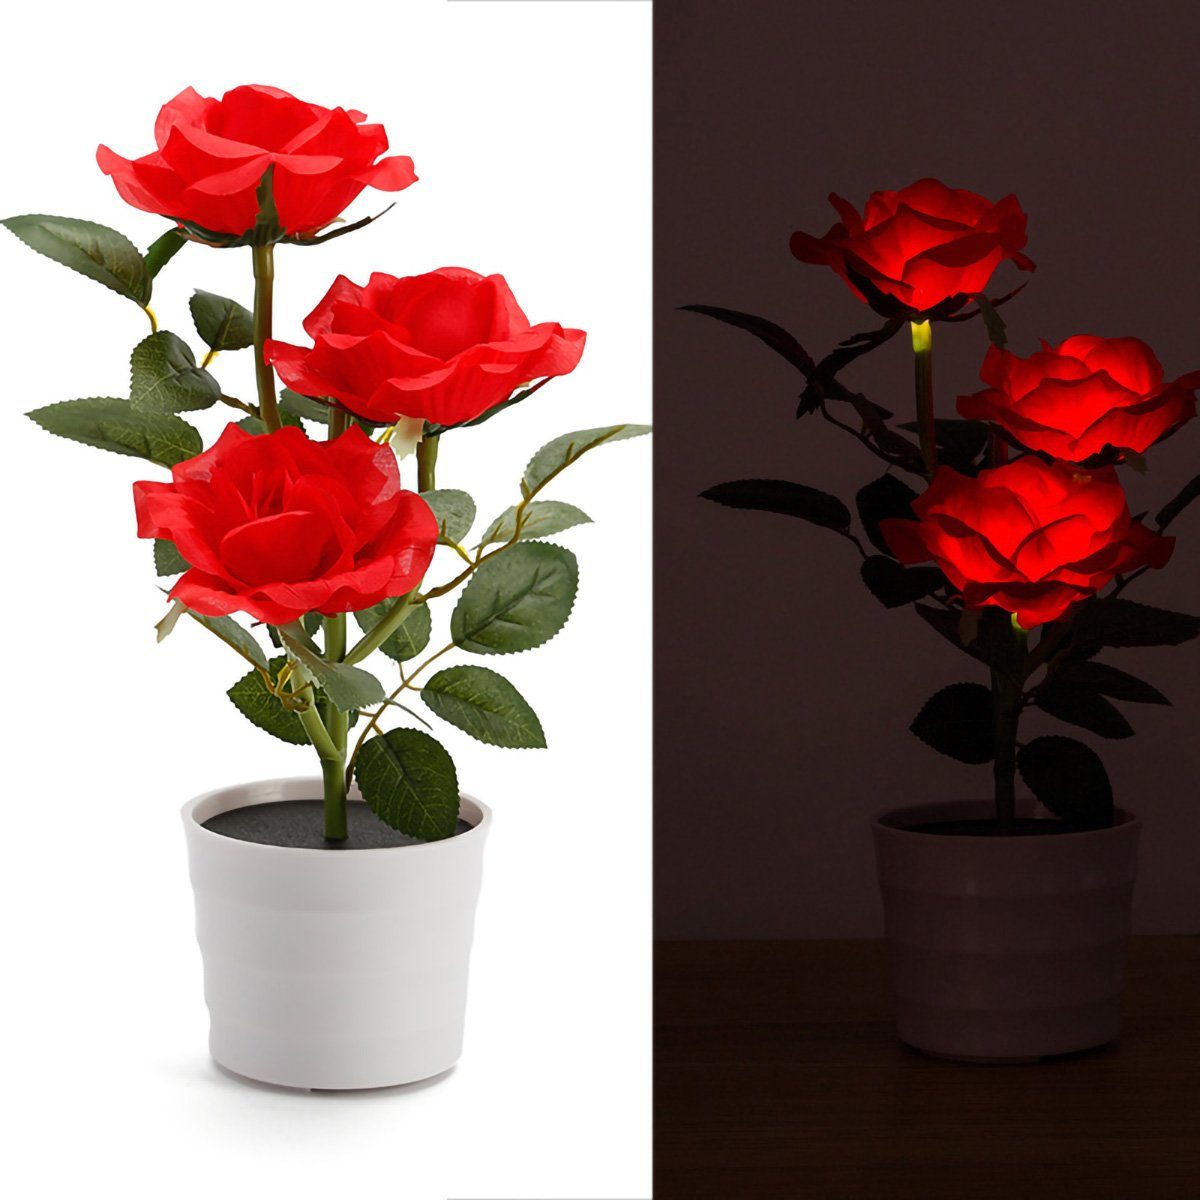 yozhiqu LED Nachtlicht Romantische Rosen Solar Lichter - Innen- und Außendekoration Lichter, 3LED-Perlen für Bonsai-Töpfe, Gärten und Innenräume